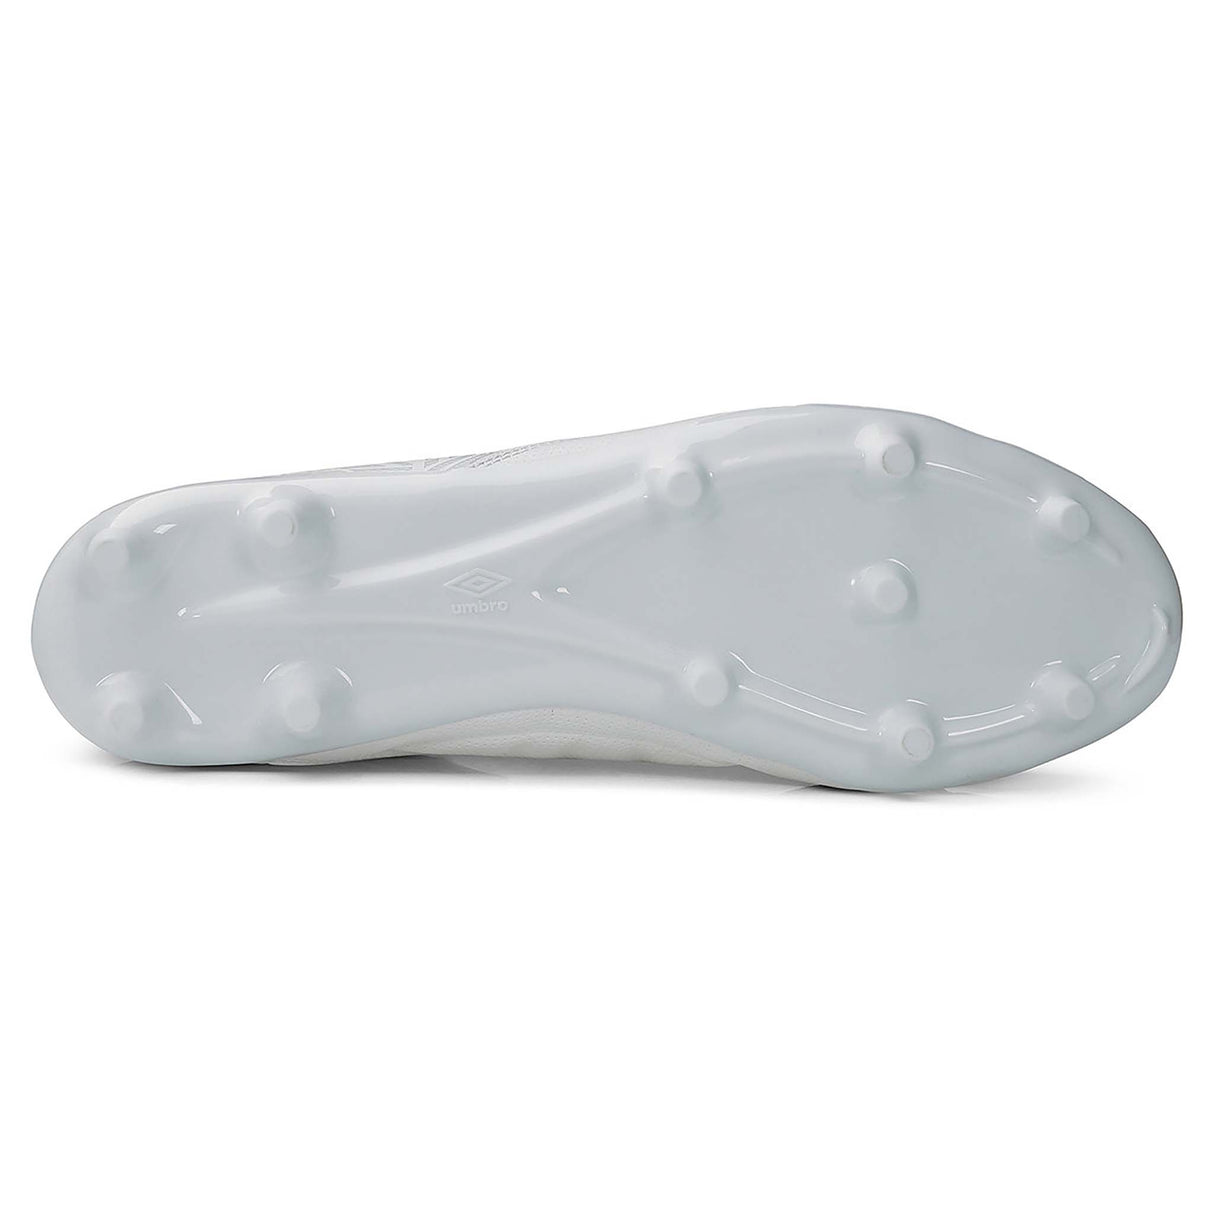 Umbro Tocco II Premier FG souliers de soccer blanc adulte crampons